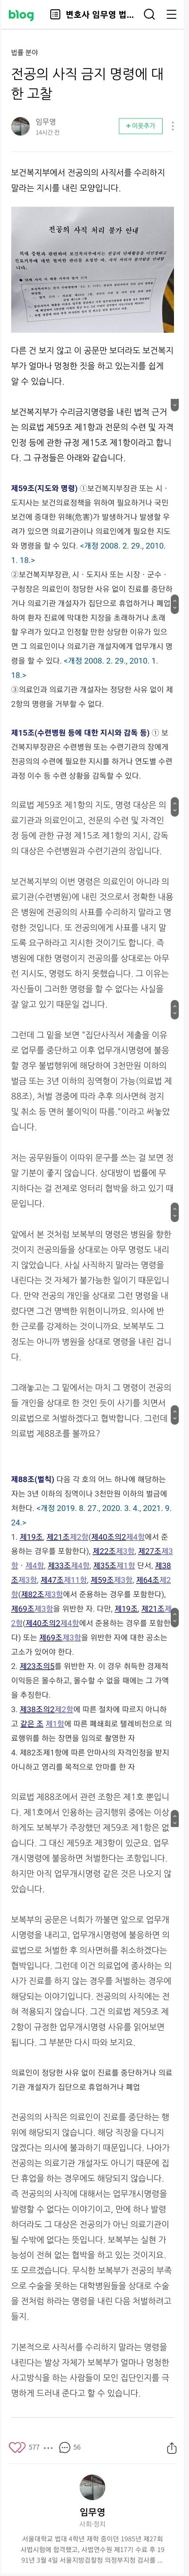 서울고검 검사출신 변호사가 말하는 전공의 처벌 가능성